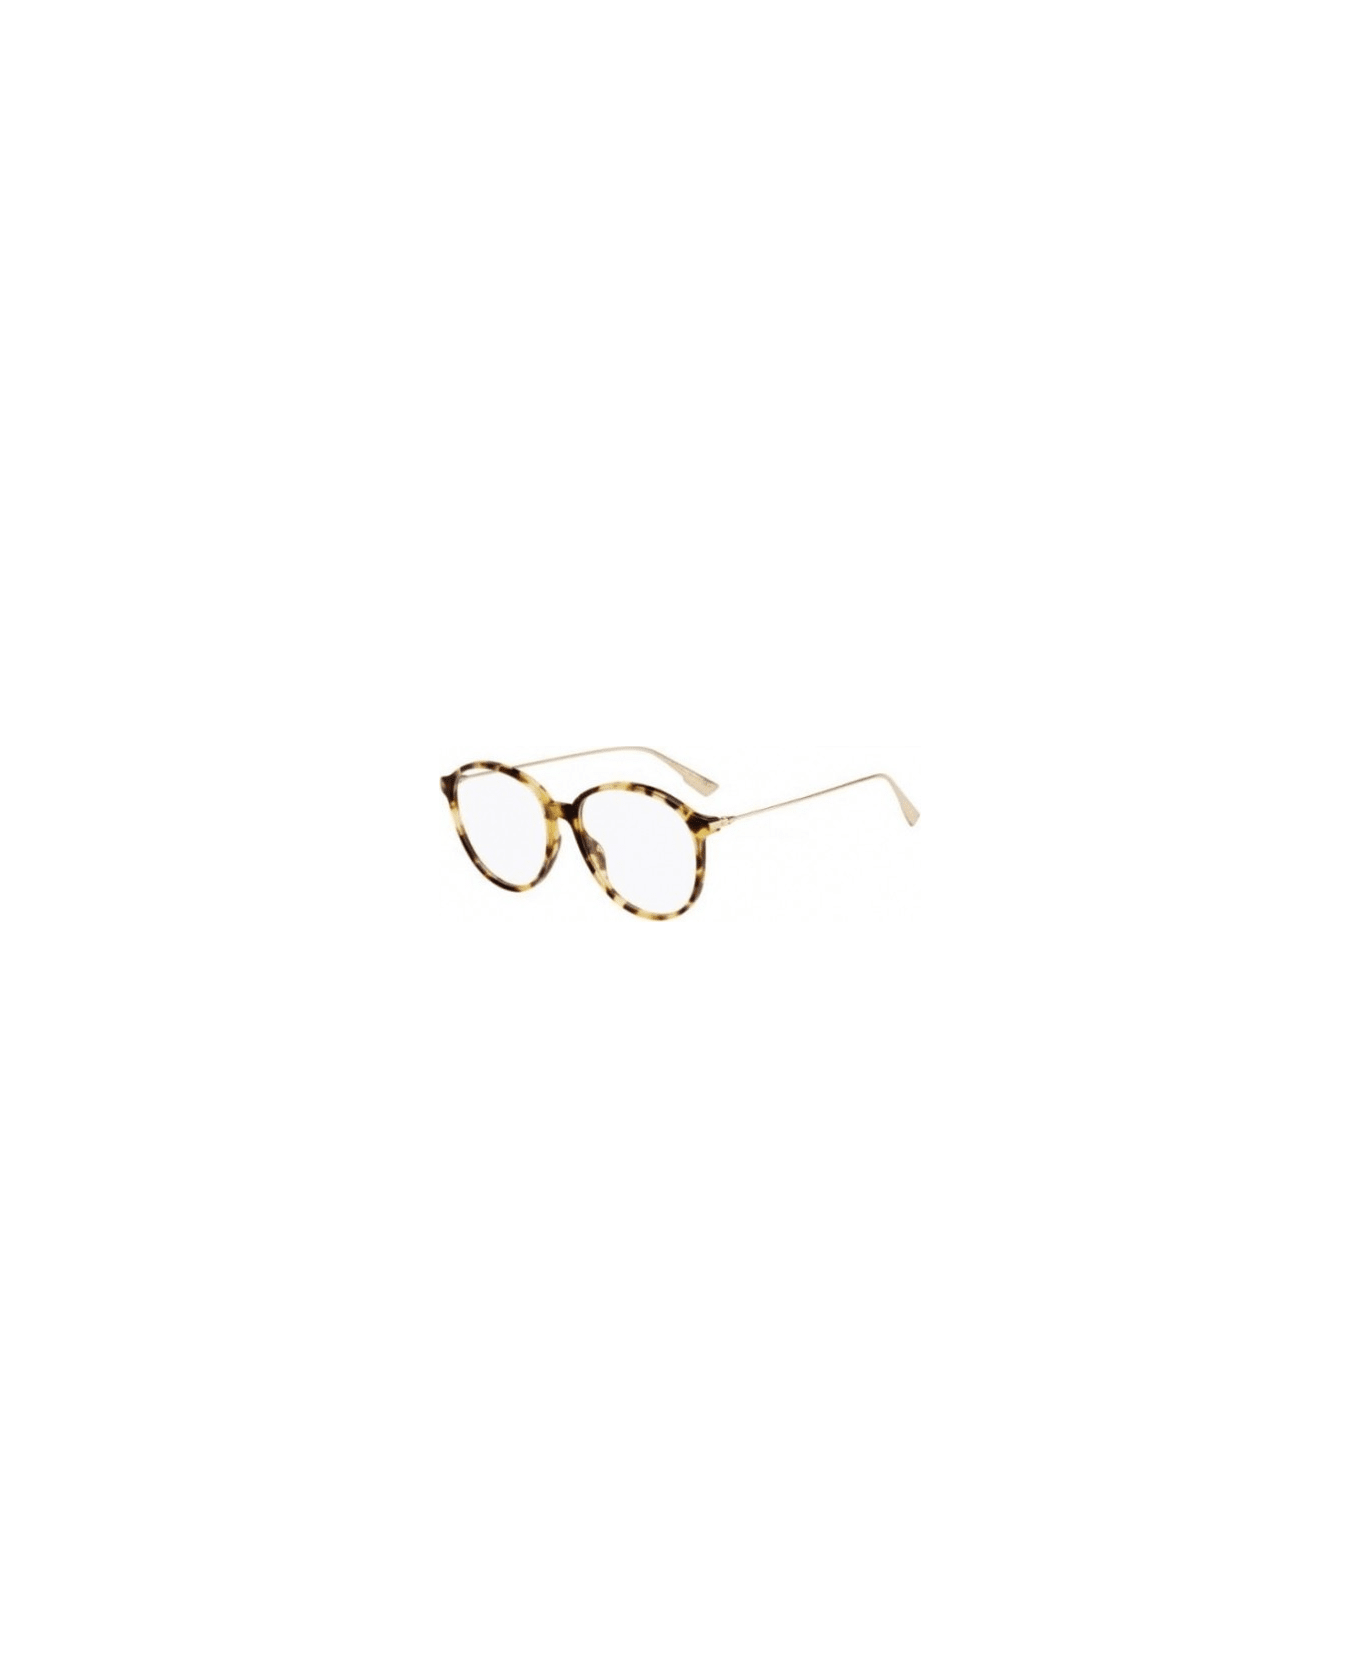 Dior Eyewear Sight 02 Glasses - Marrone